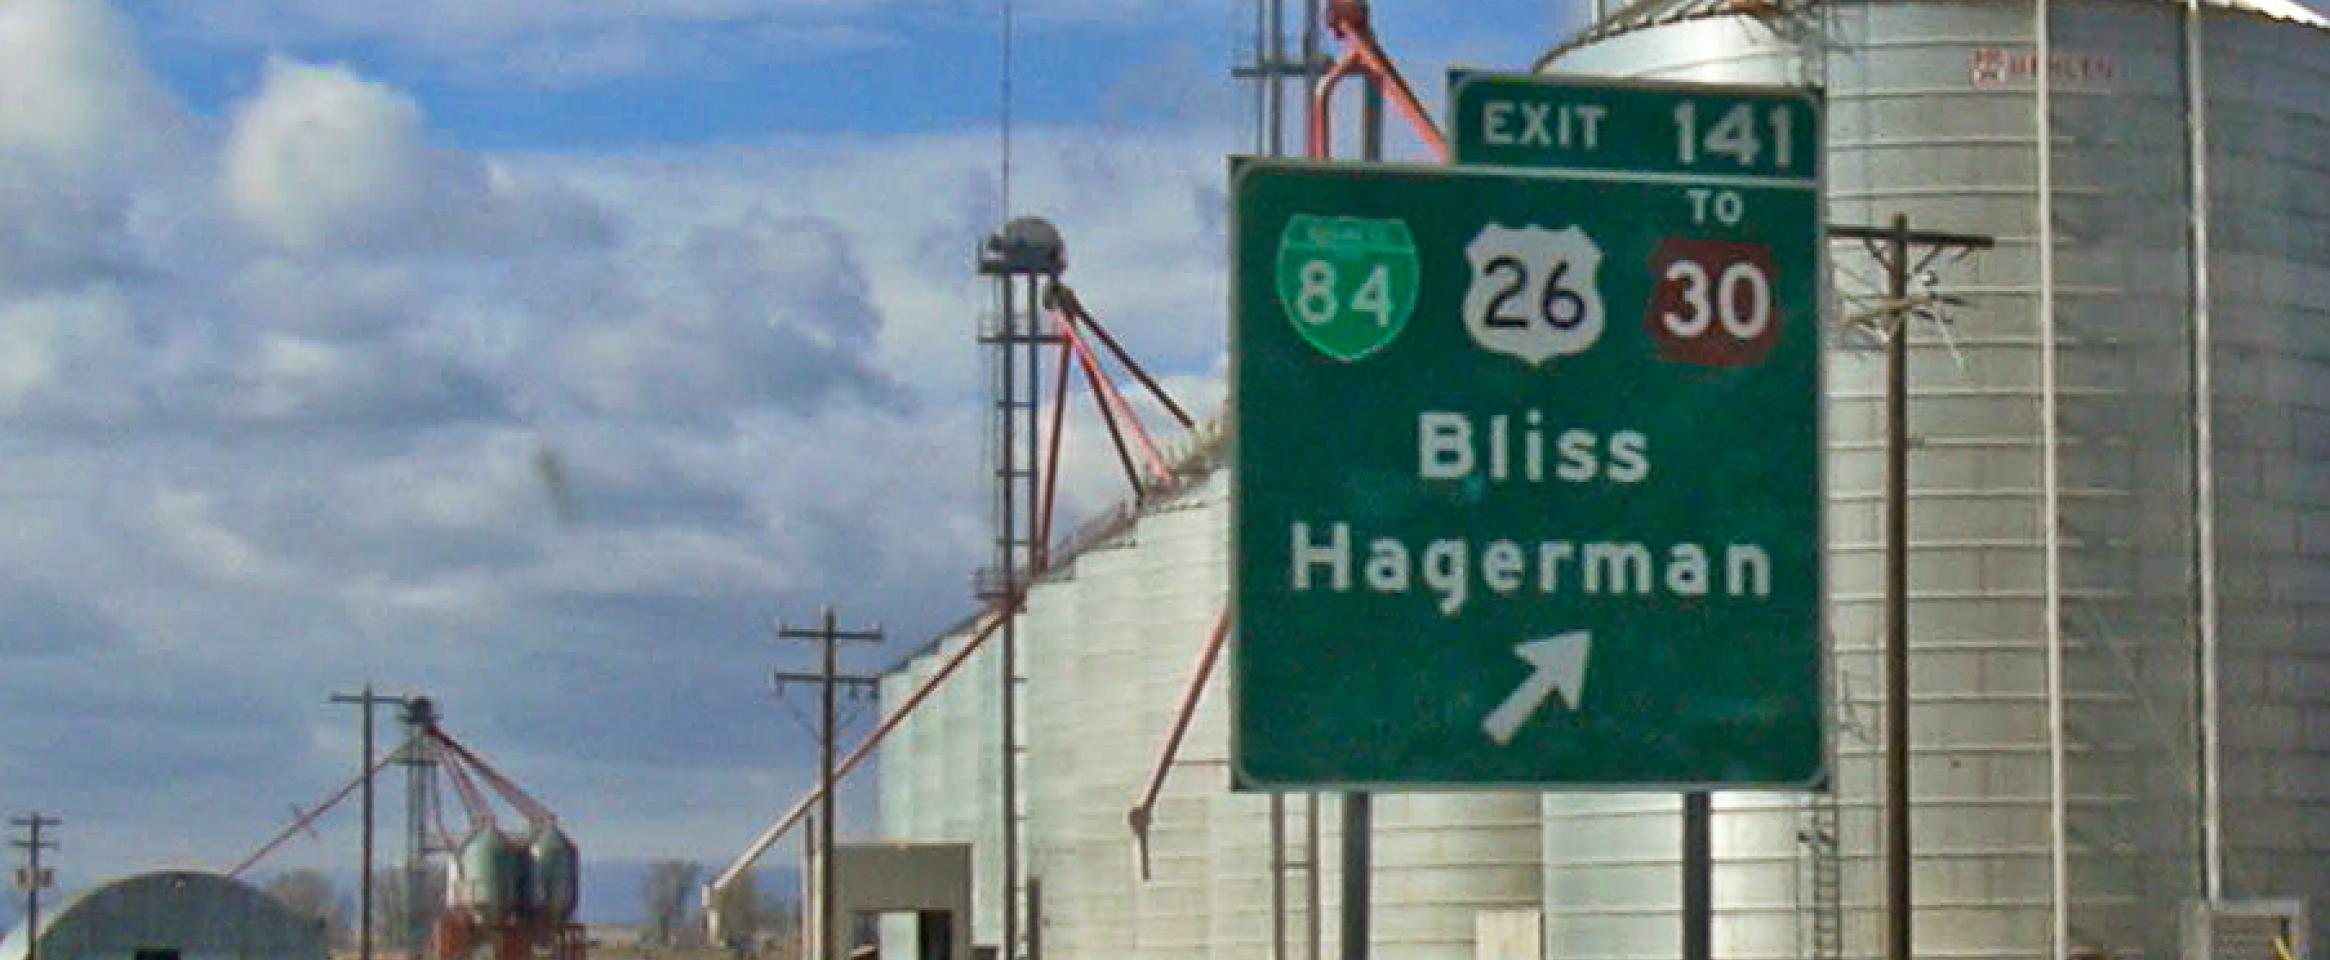 Exit 141 towards Bliss, Idaho